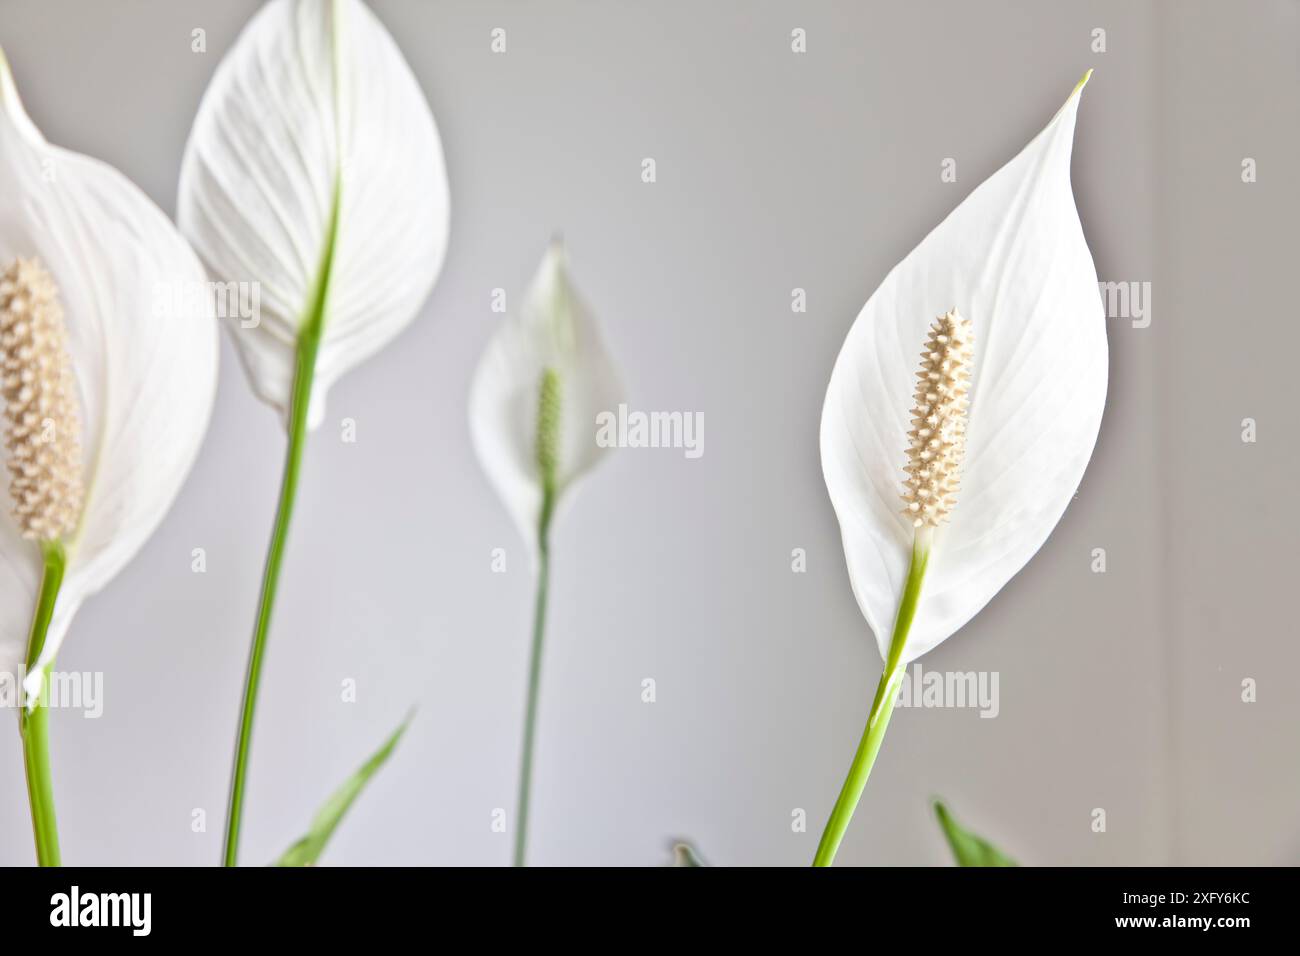 La pianta d'appartamento con grande foglia bianca di forma ovale è anche chiamata pianta del giglio della pace o del cucchiaio, Spathiphyllum Foto Stock